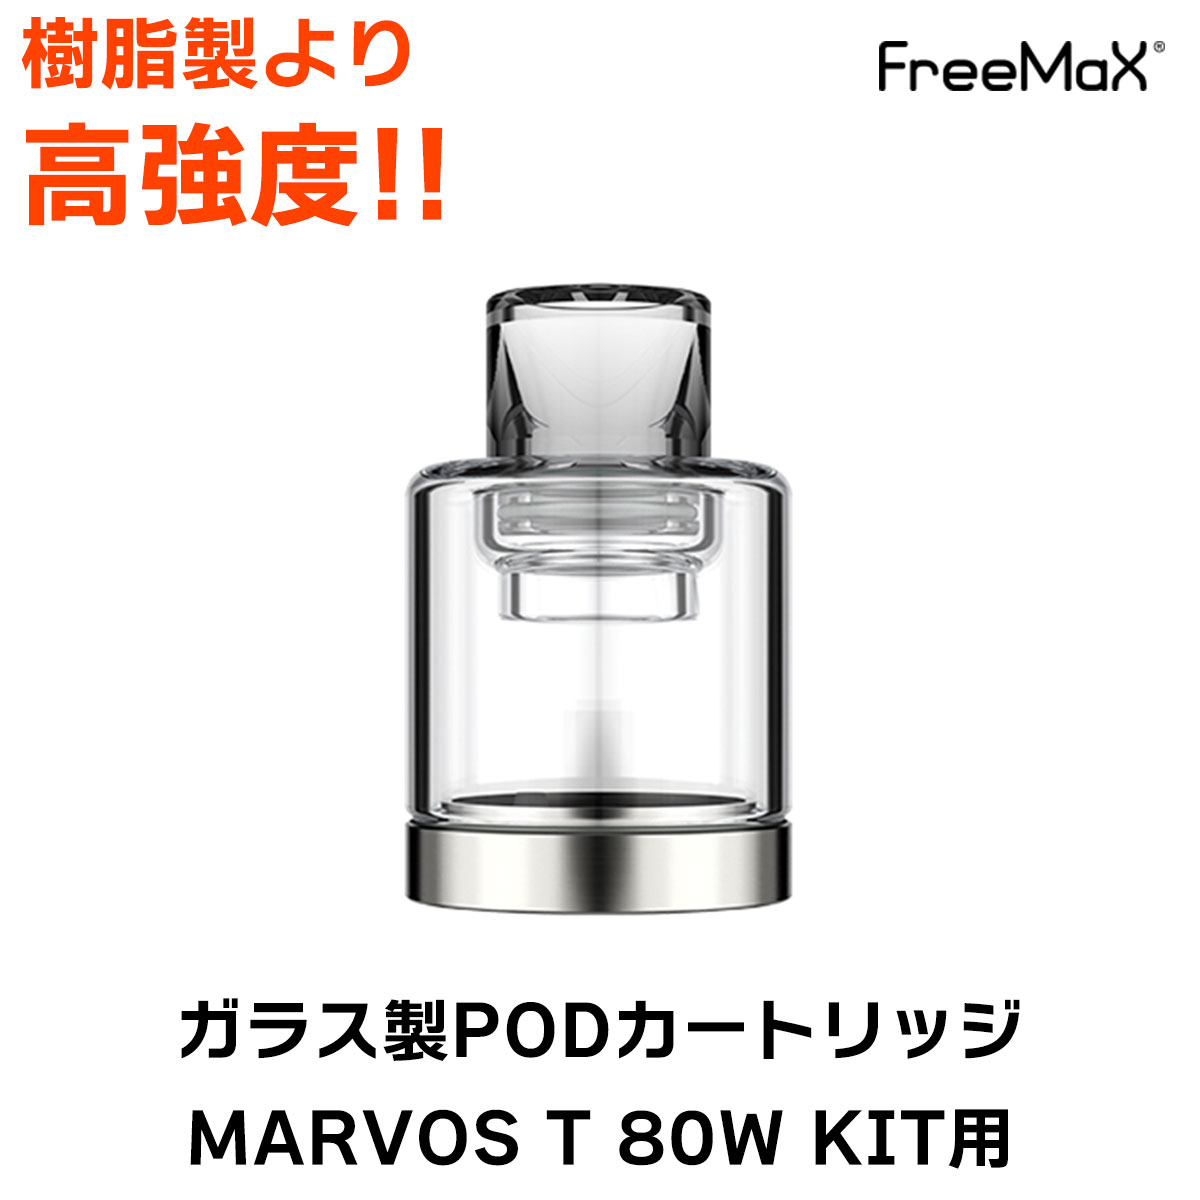 Freemax Marvos T KIT ガラス製POD カートリッジ フリーマックス マーボス キット 電子タバコ vape pod ポッド型 ガラス PODカートリッジ 交換用